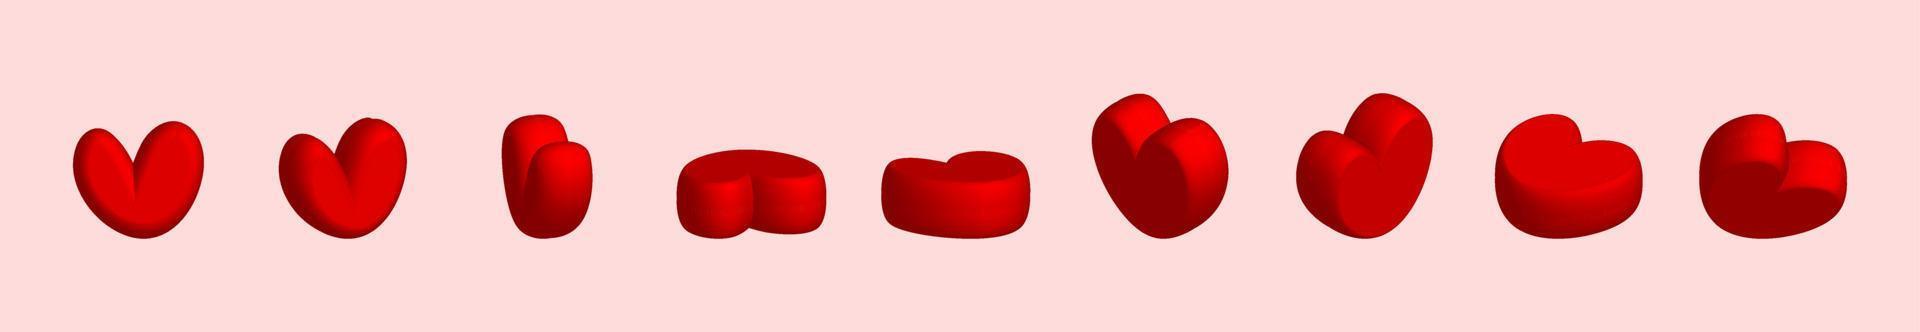 insieme dell'icona dei cuori. simbolo di amore di san valentino, icona del cuore 3d anteriore e vista angolare di rotazione. vettore